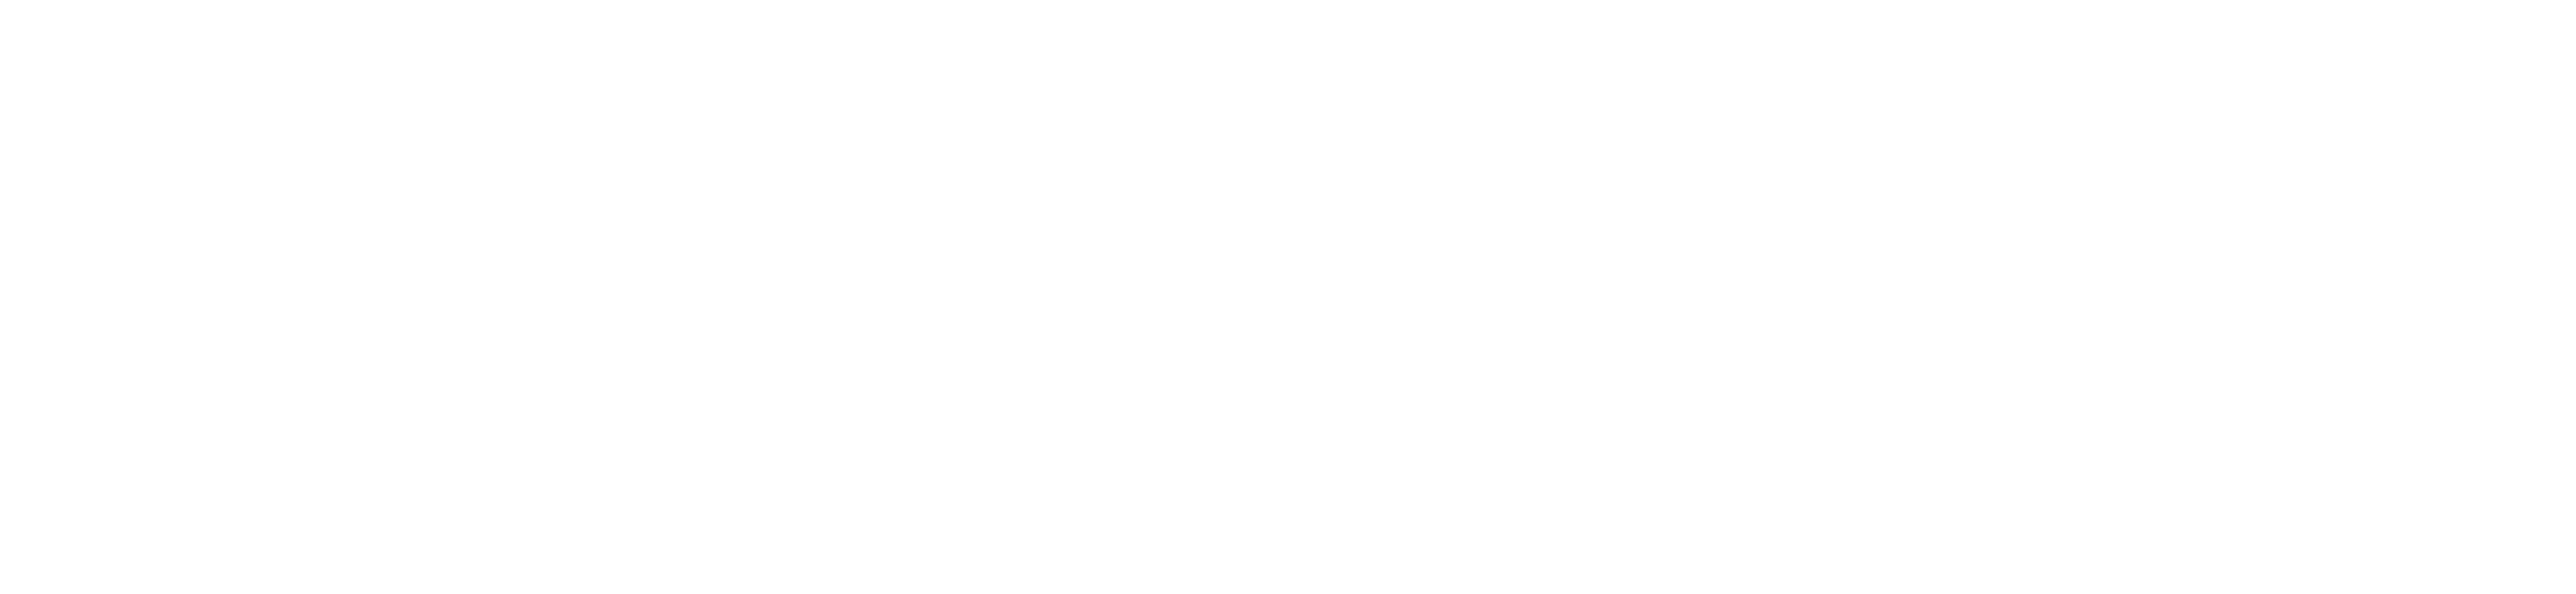 Dolomite logo